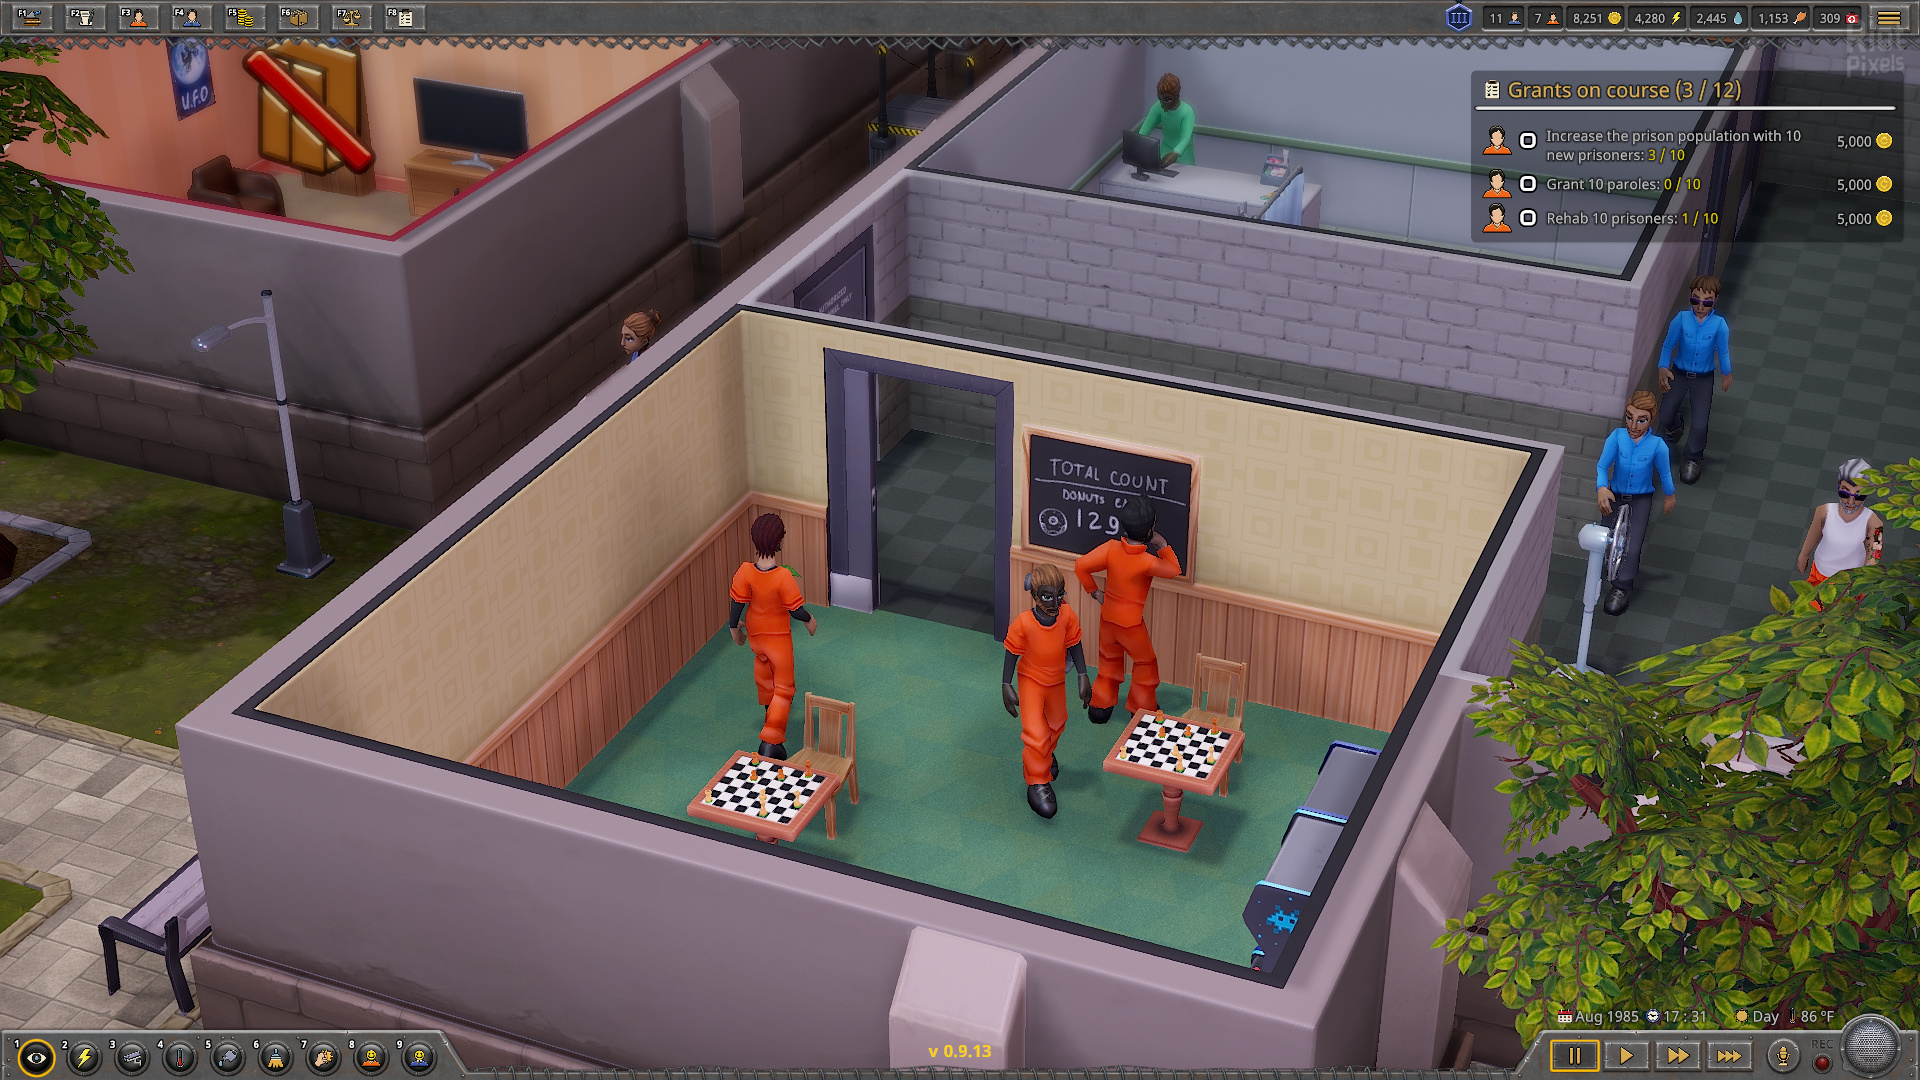 Prison Tycoon: Under New Management - скриншоты из игры на R